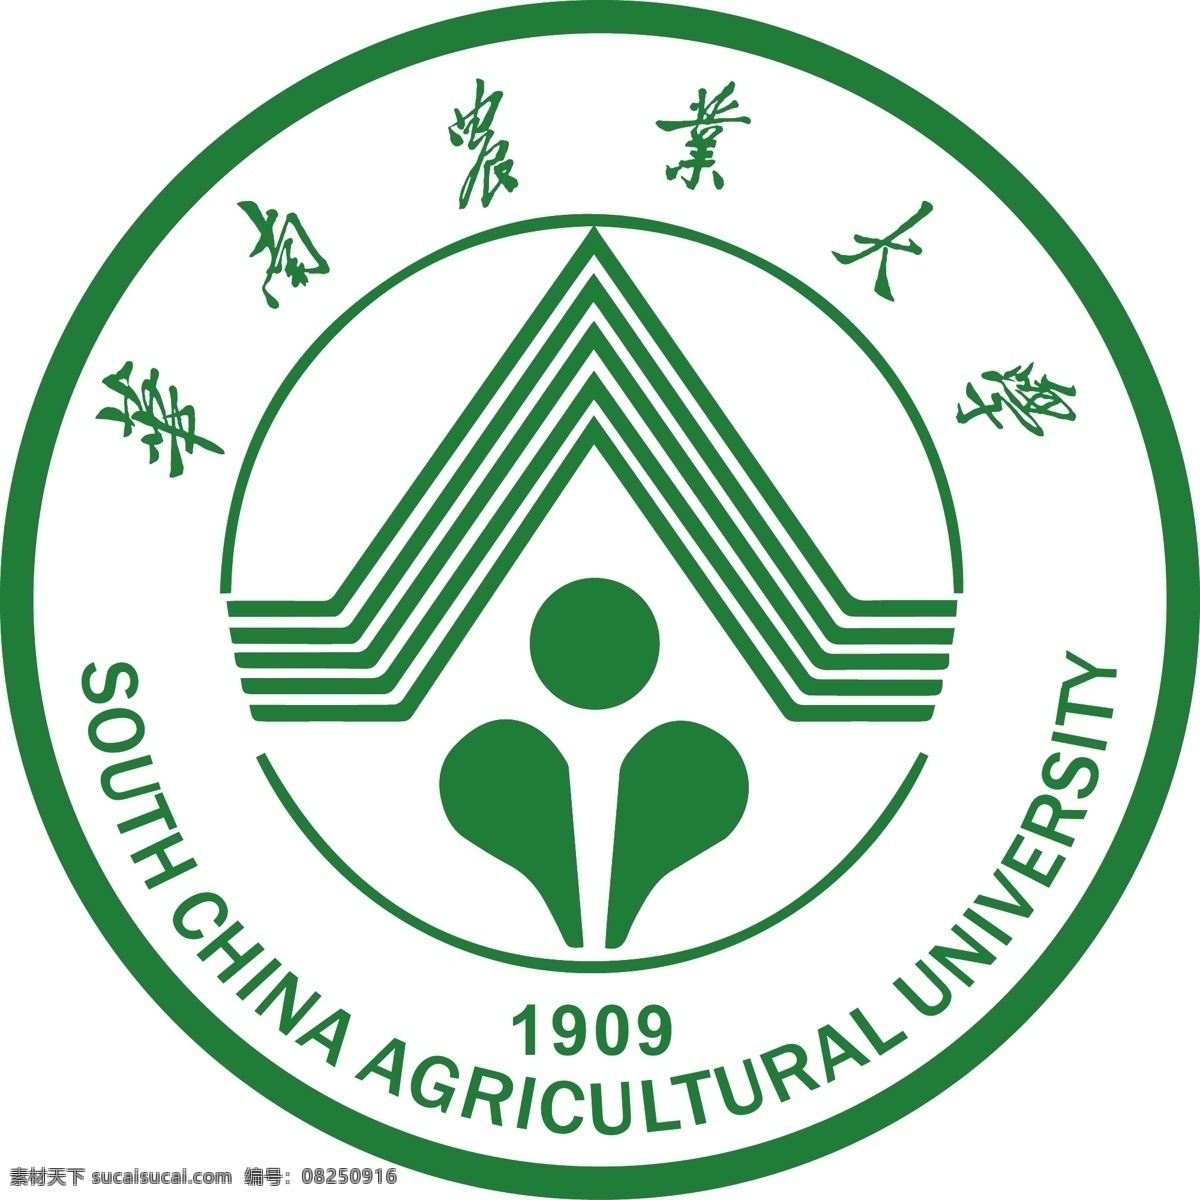 华南农业大学 logo 最新版 1909 校徽 标识